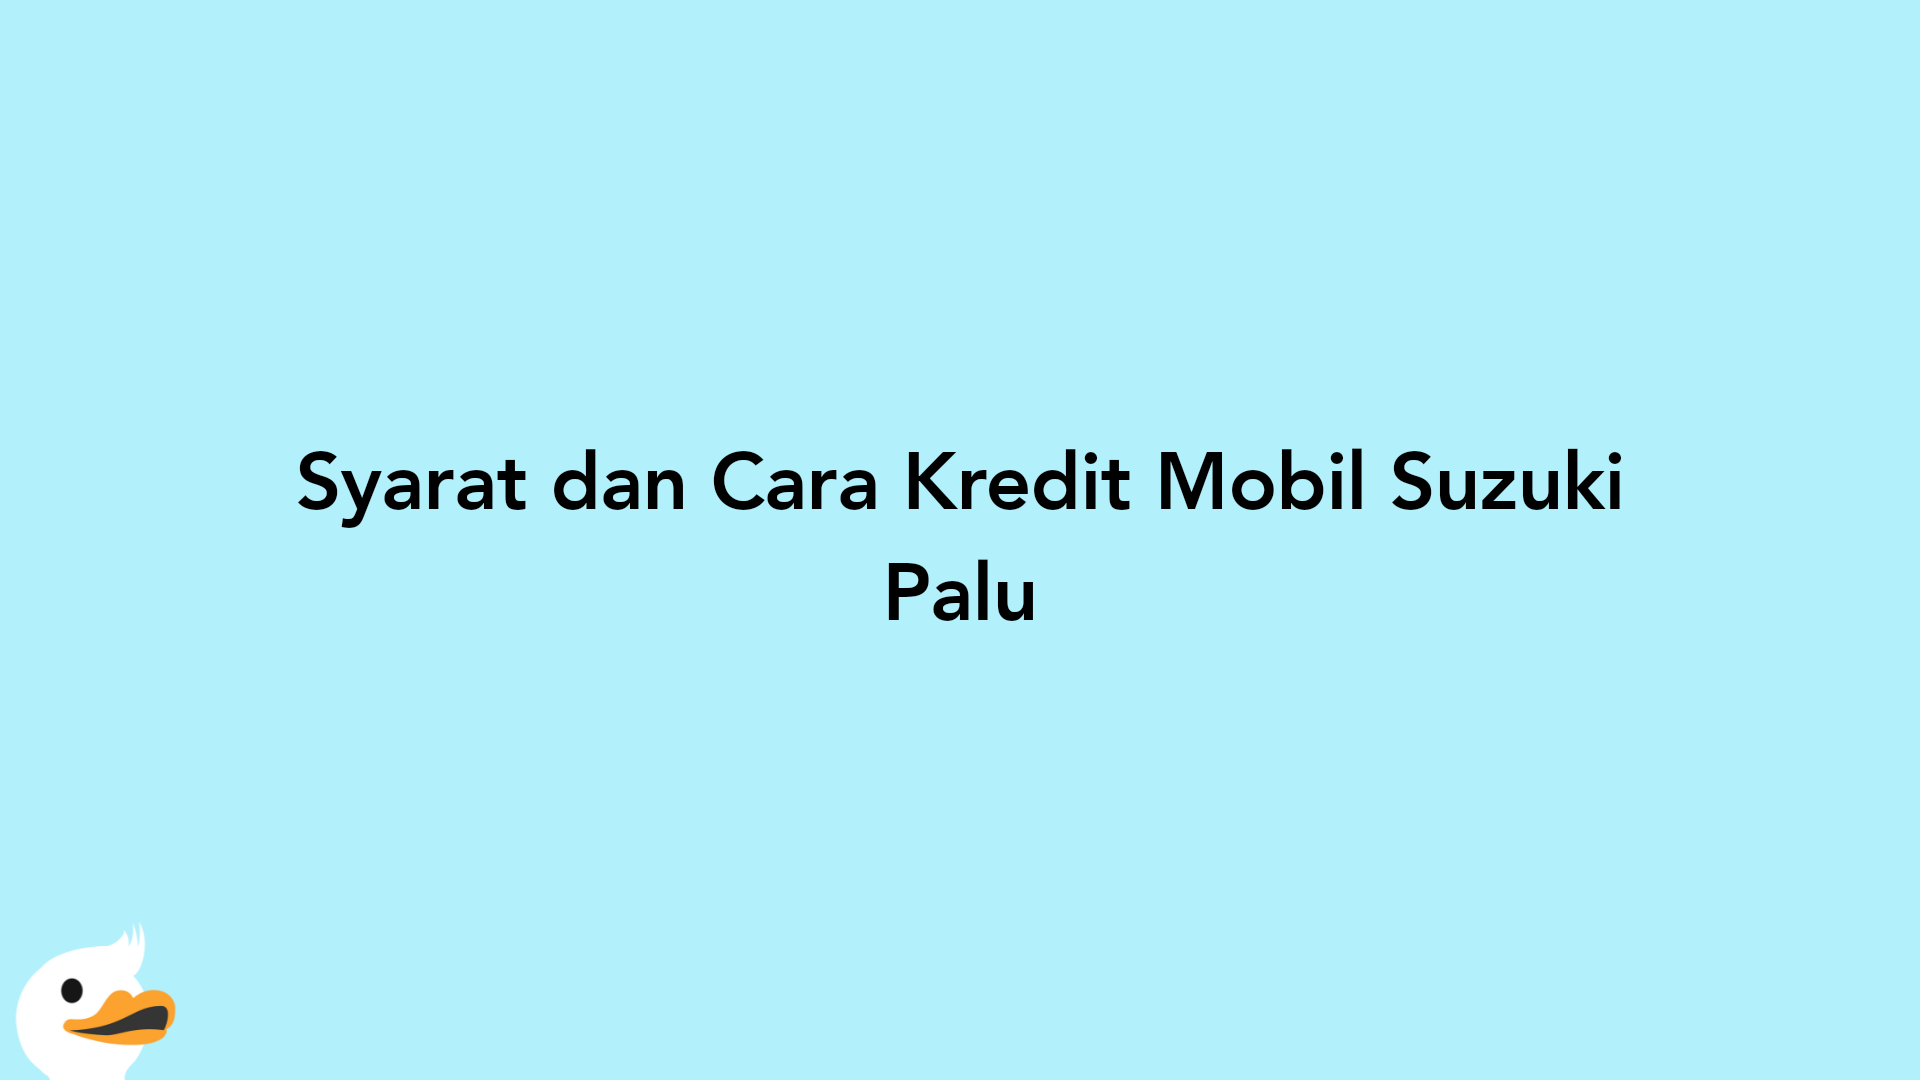 Syarat dan Cara Kredit Mobil Suzuki Palu